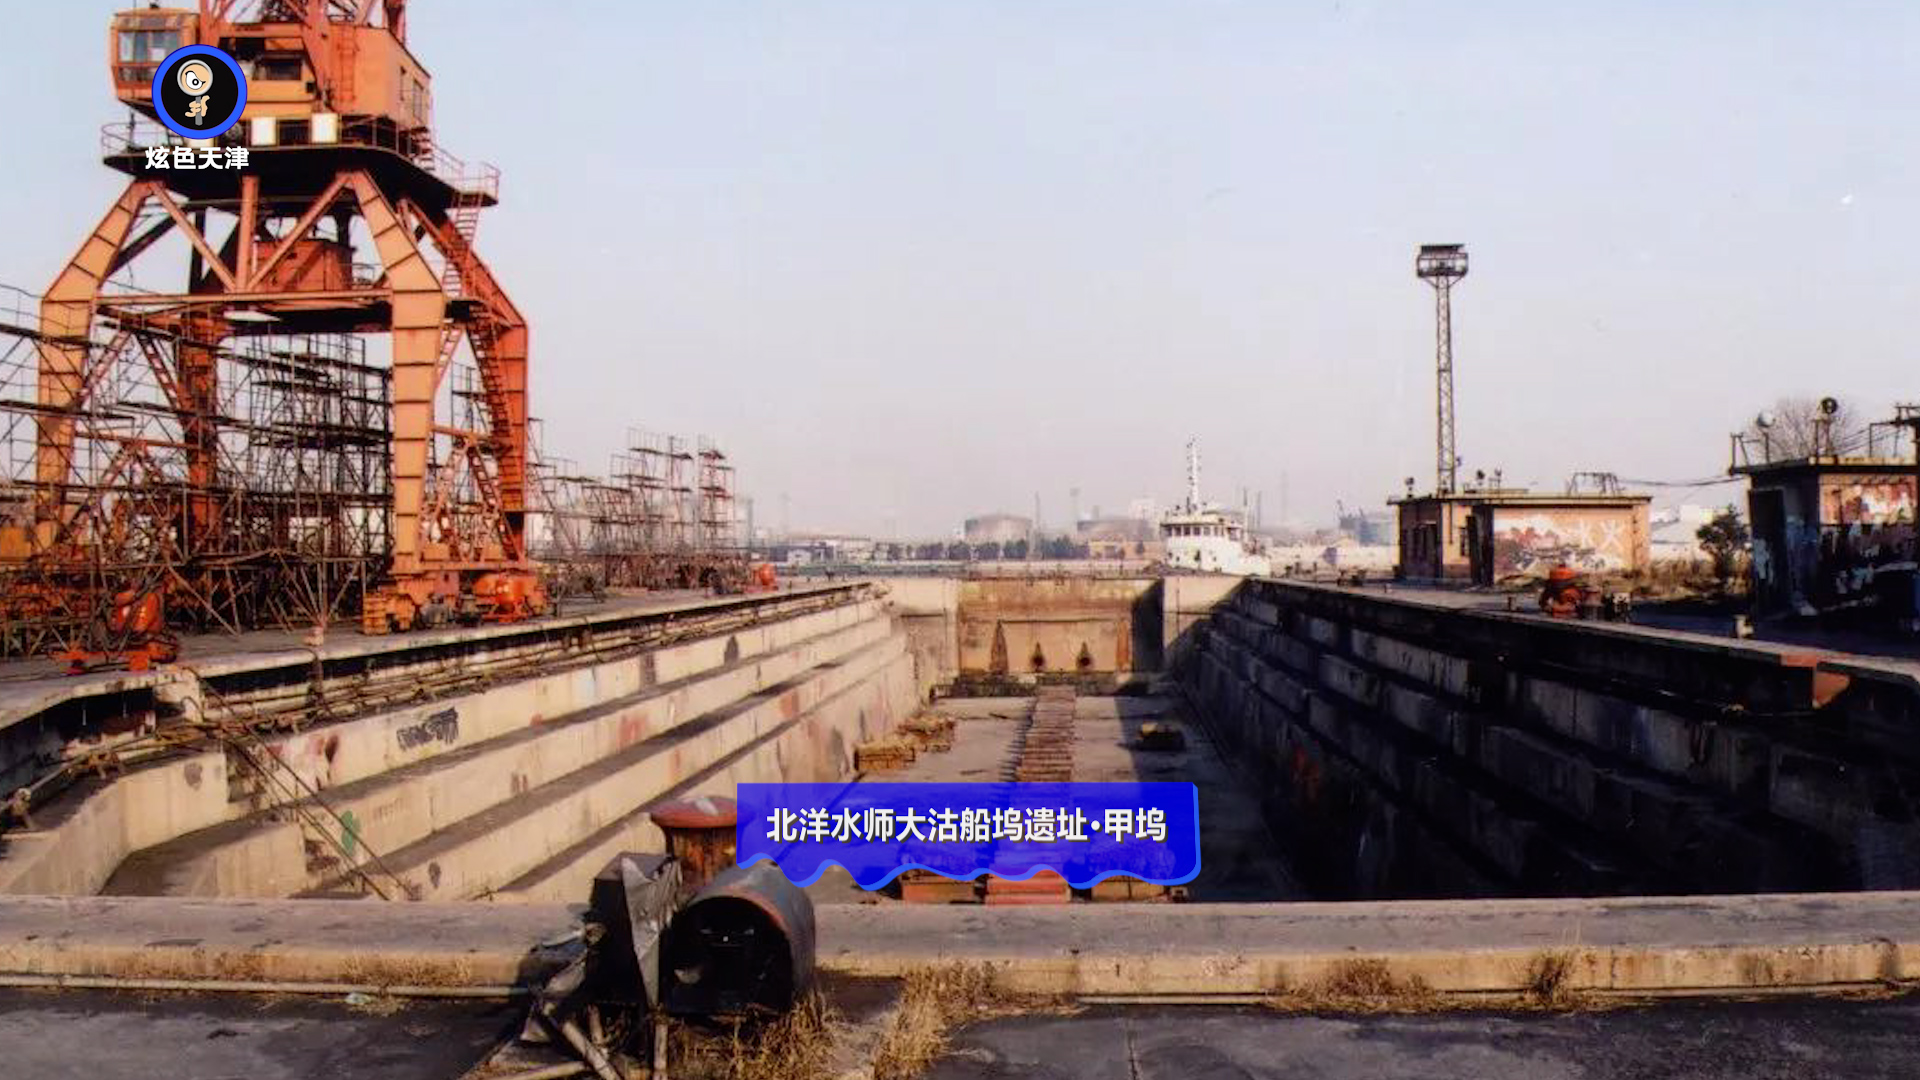 文化随行-大沽船坞——中国北方最早的船舶修造厂